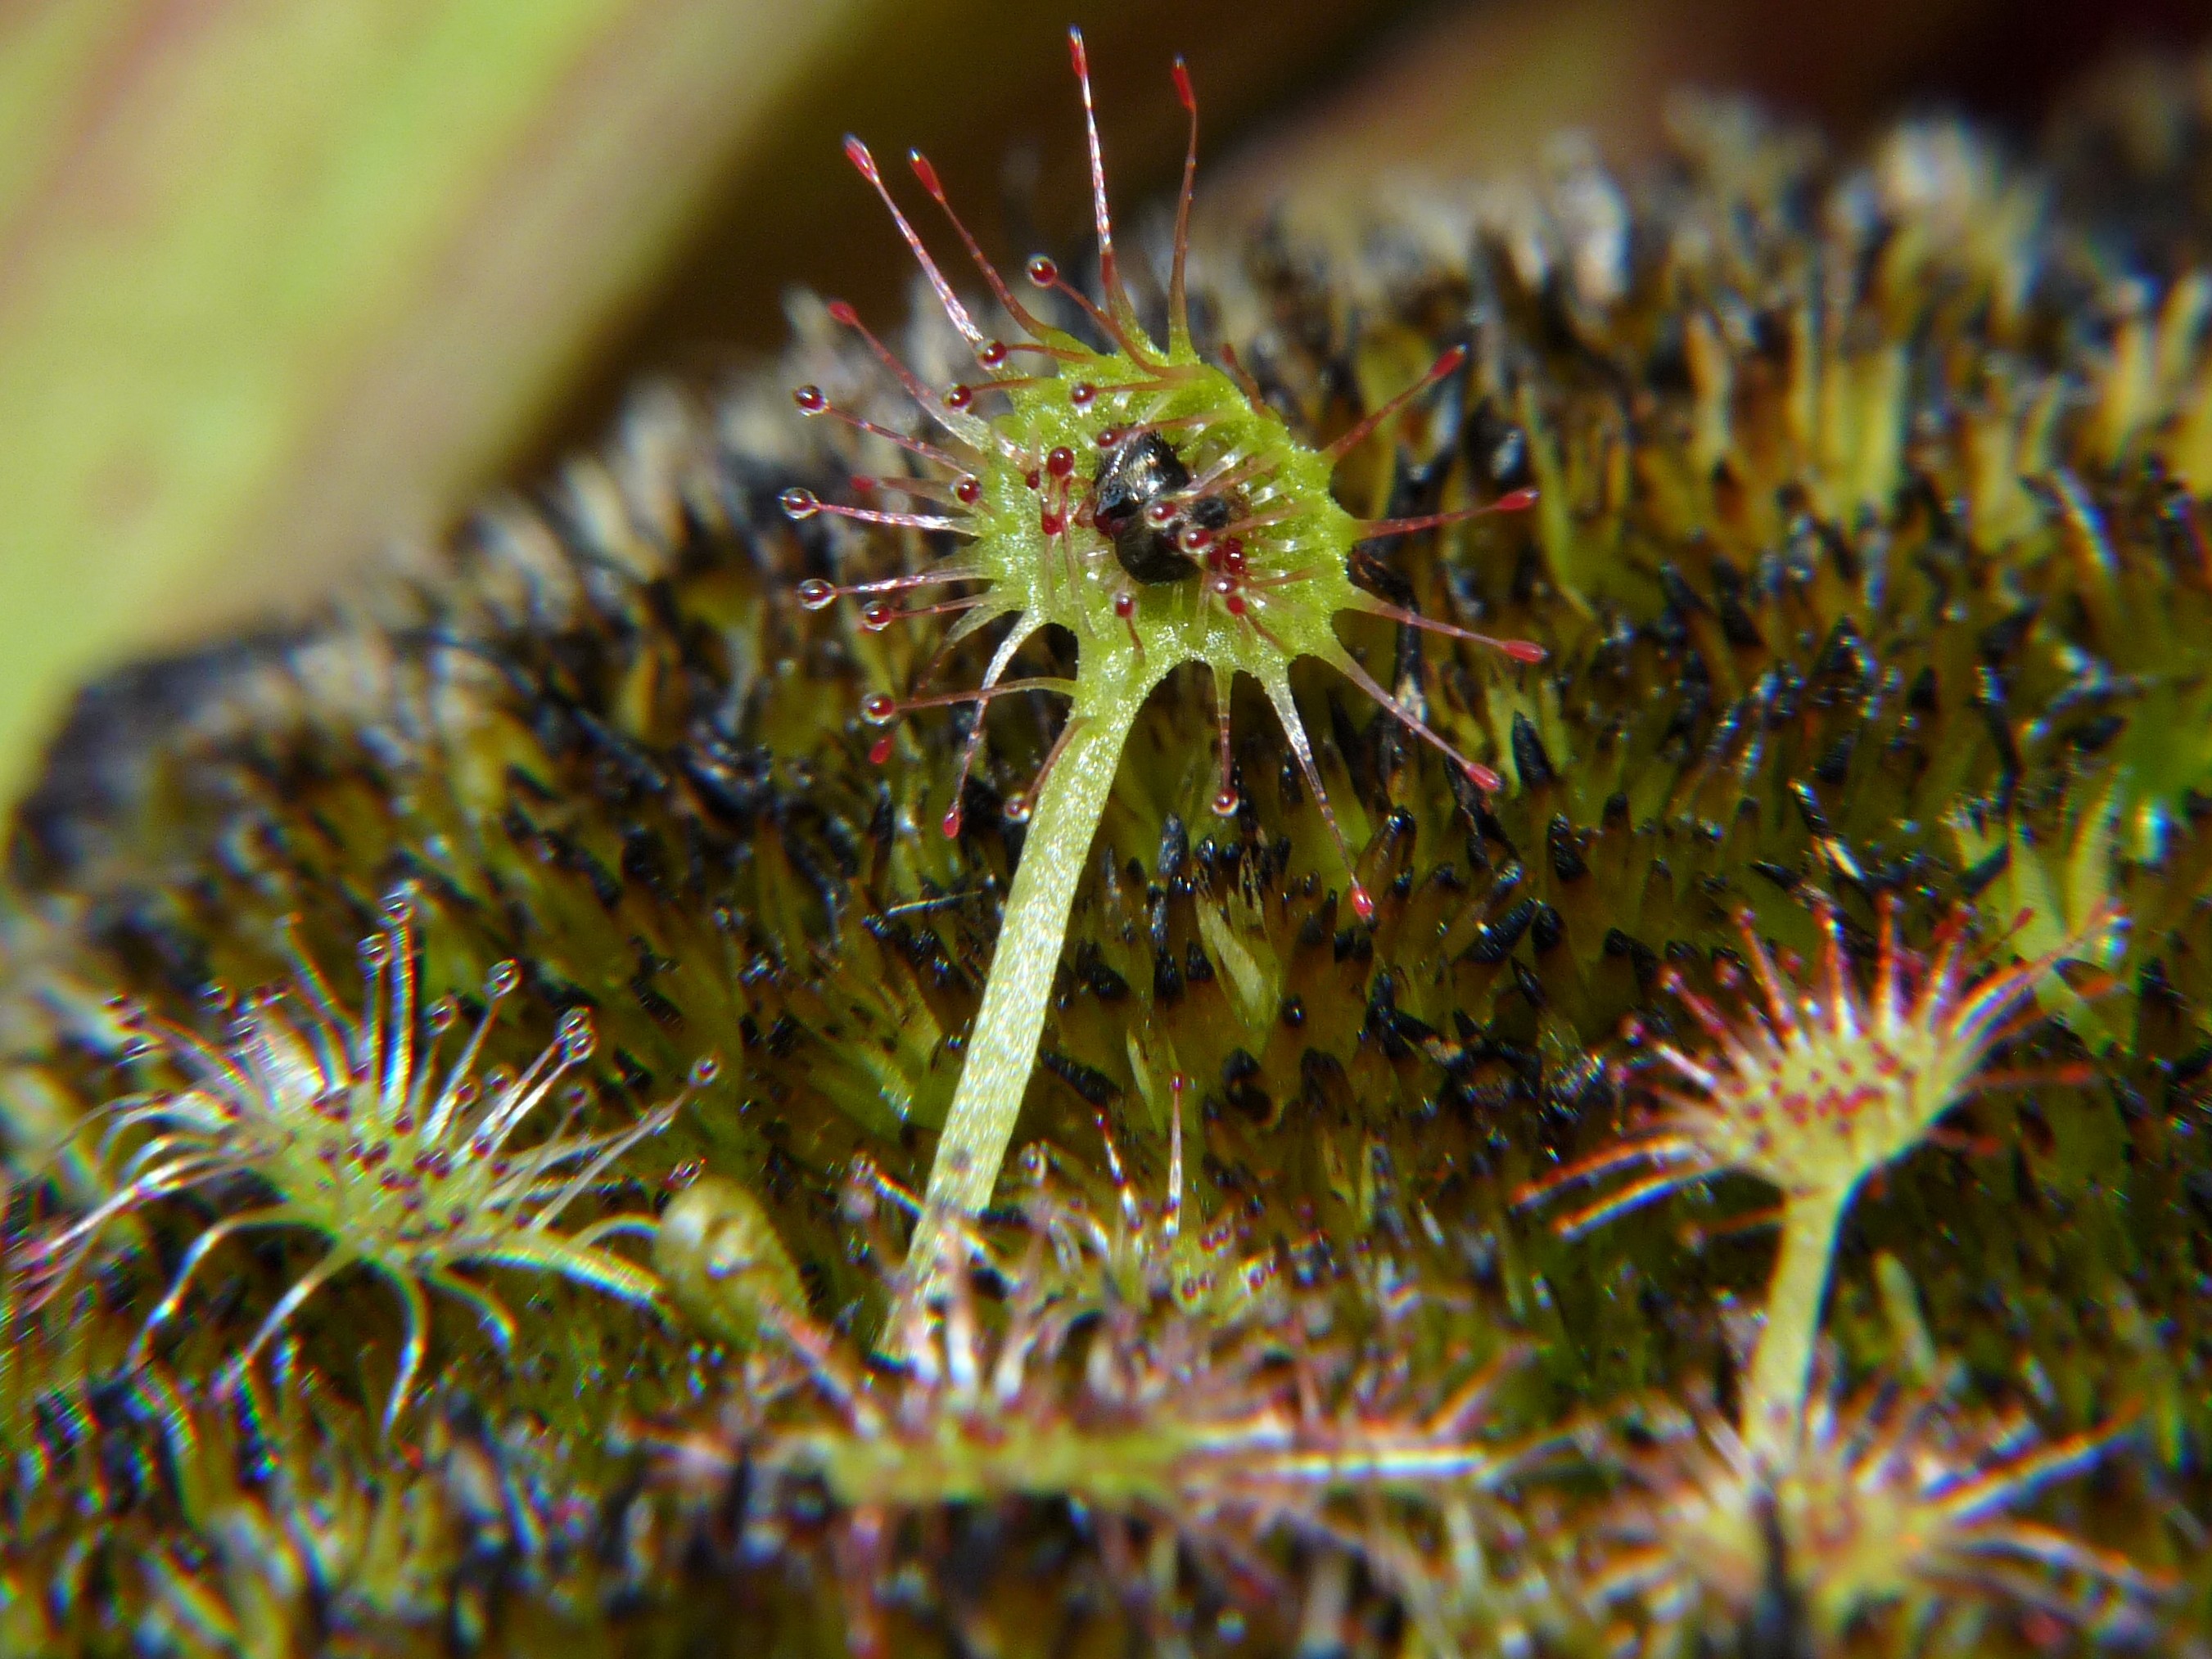 Donica na działce 2017 - Drosera rotundifolia - rosiczka okrągłolistna